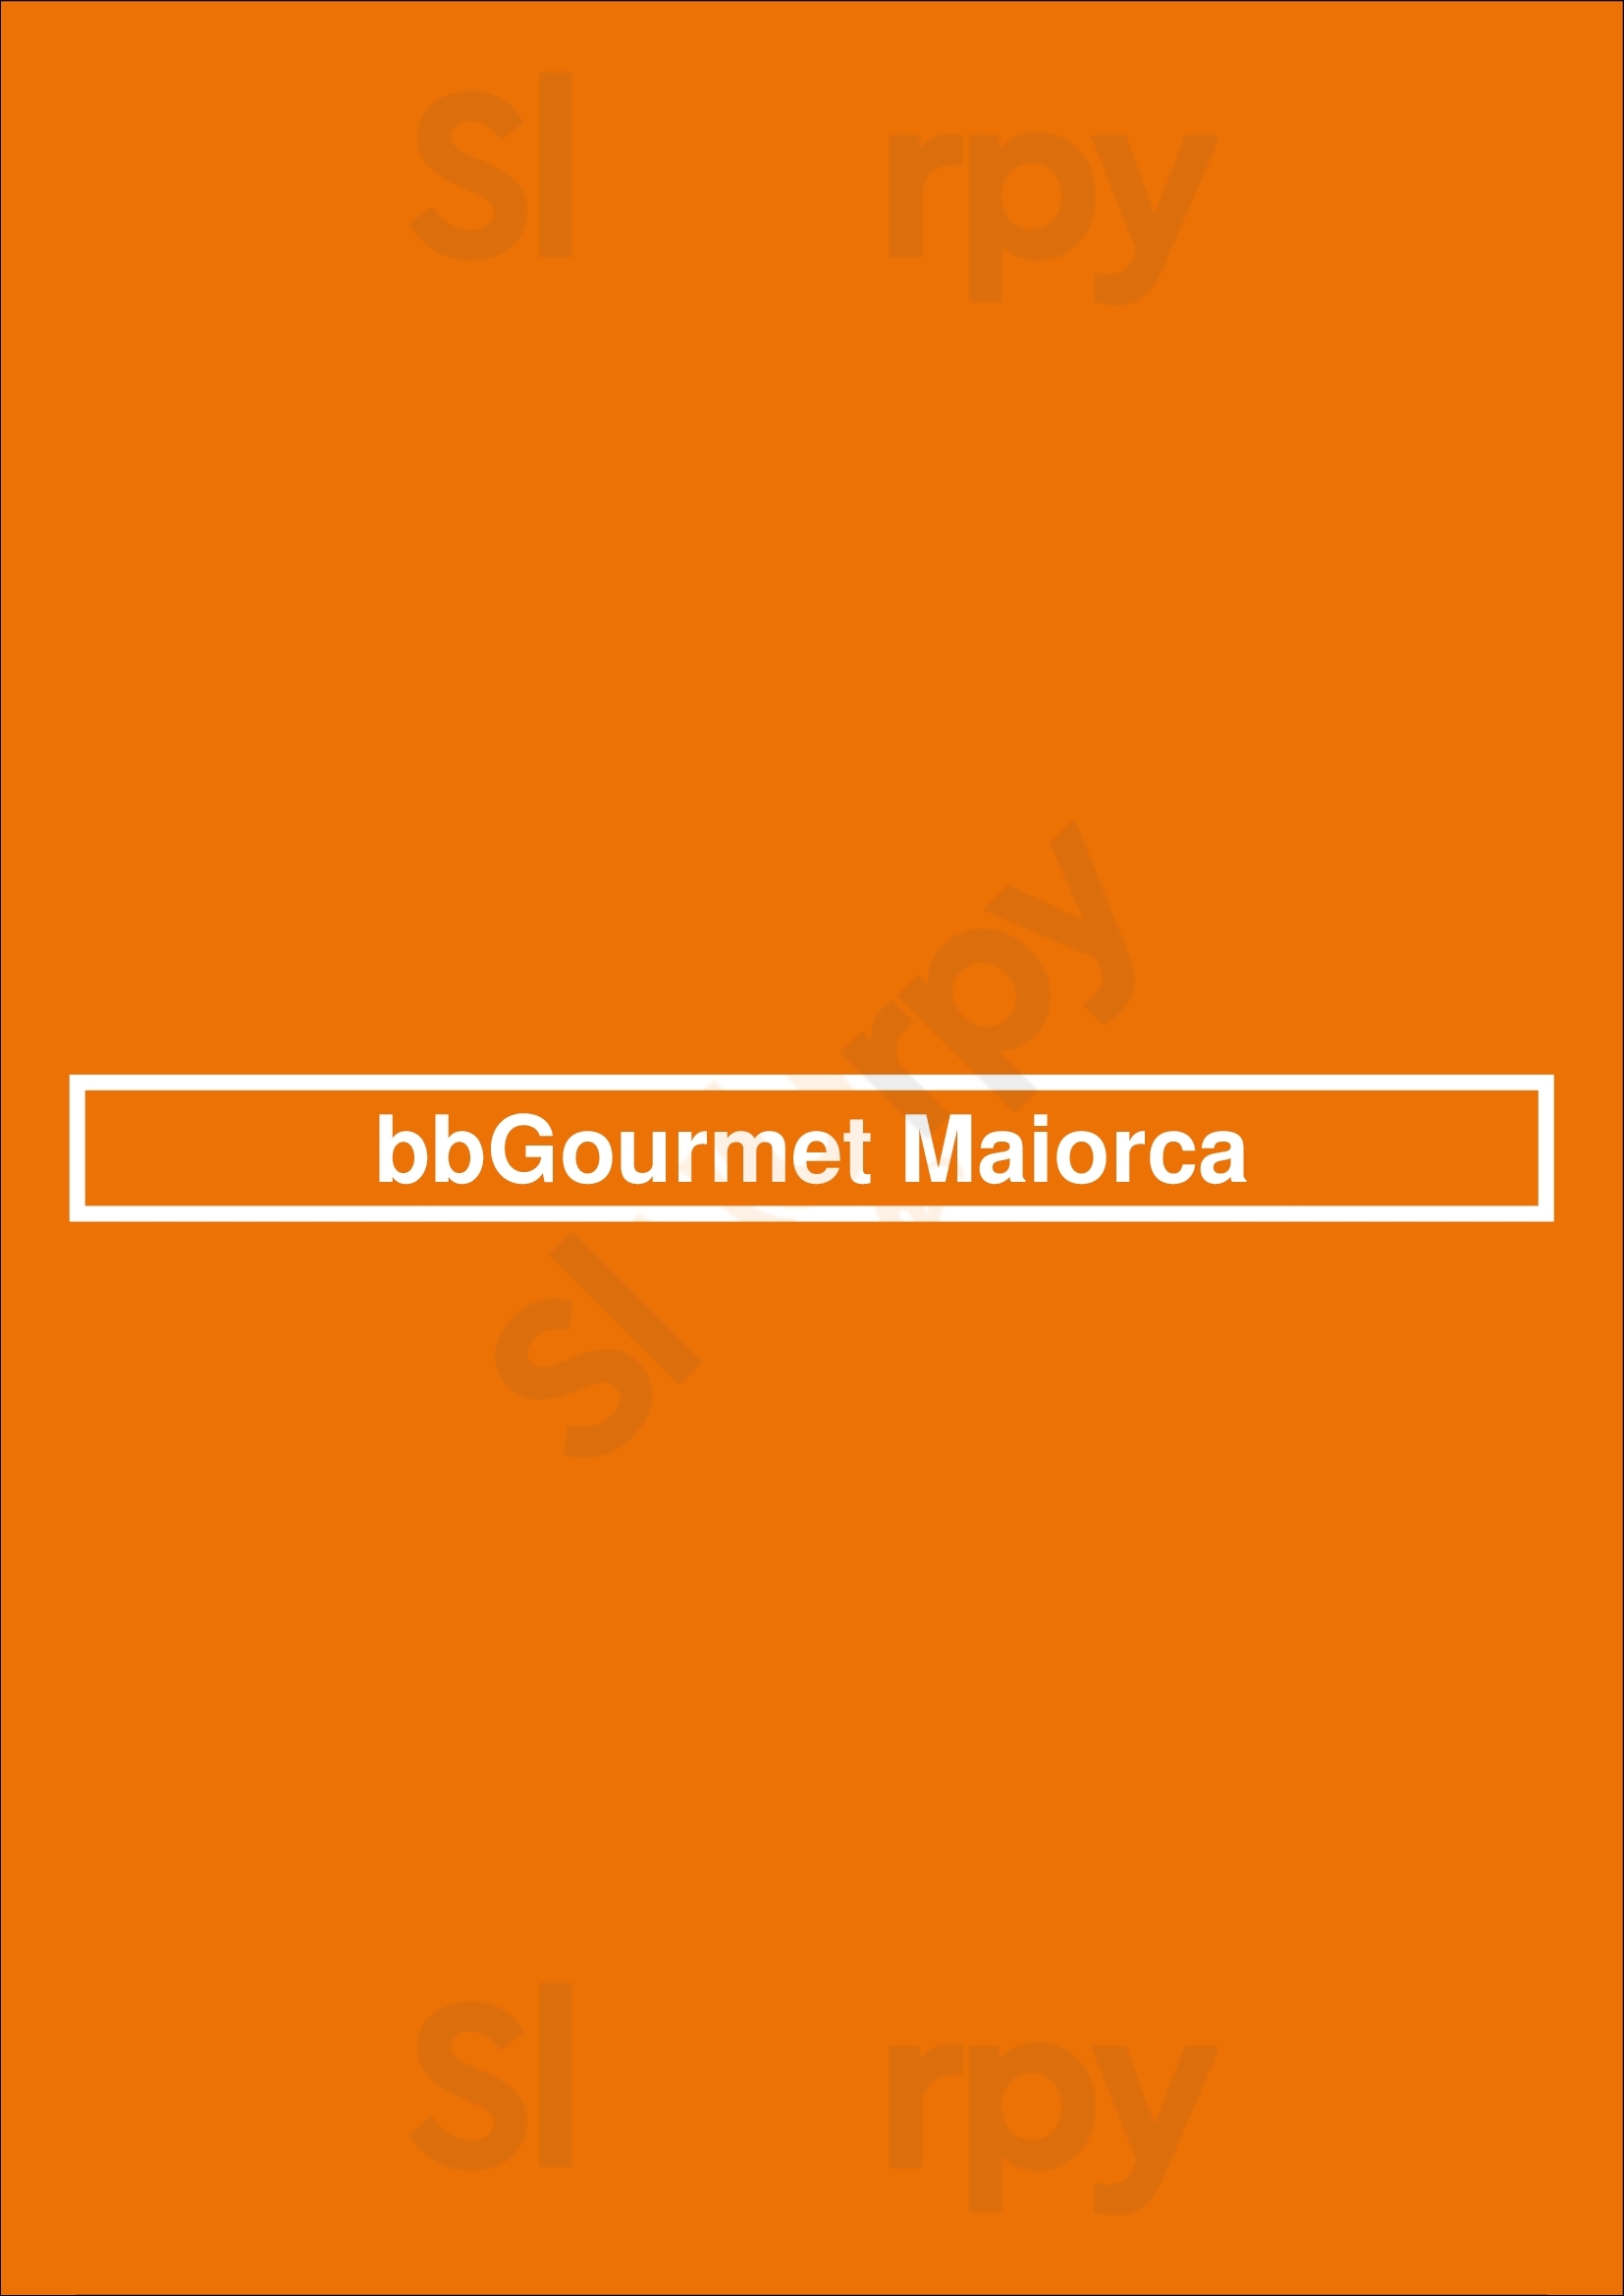 Bbgourmet Maiorca Porto Menu - 1